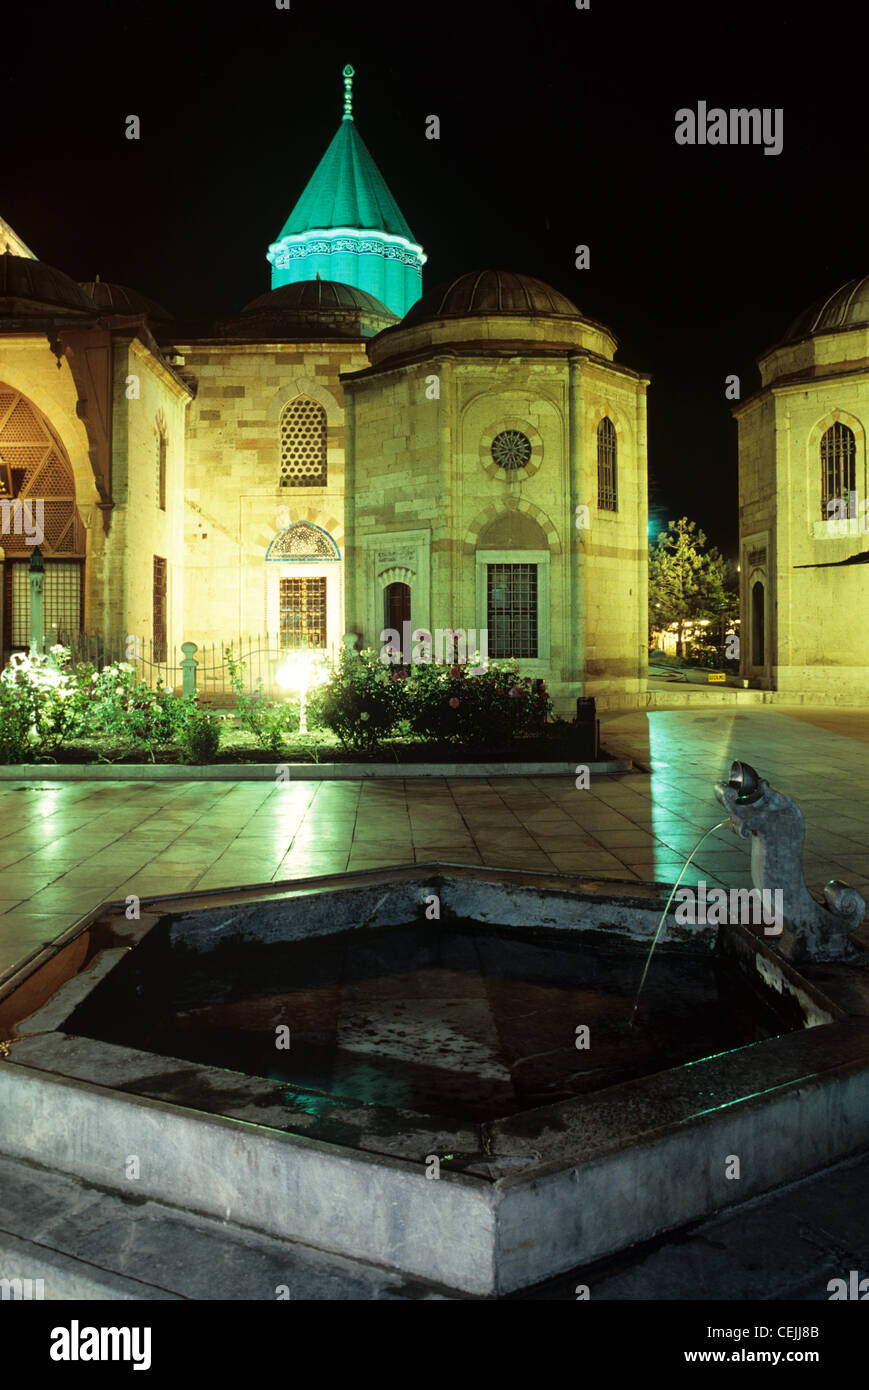 Vue de nuit de la Mevlana Tekke ou Dervish Lodge, tombeau ou complexe de musées, Konya, Turquie Banque D'Images